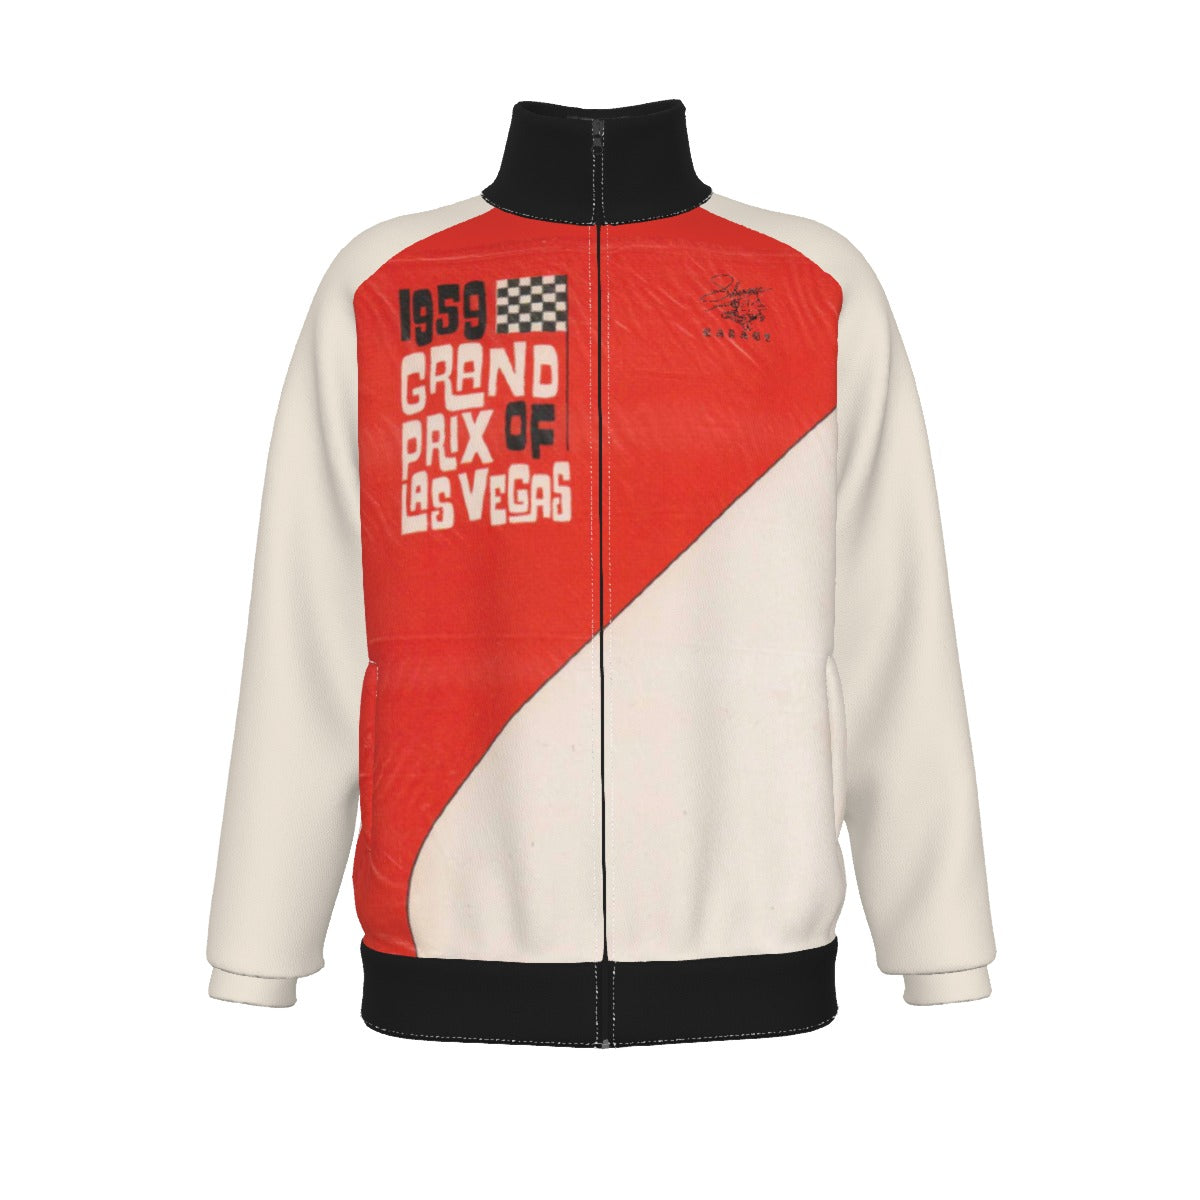 Las Vegas Grand Prix vintage graphics race jacket – Liberace Museum Store